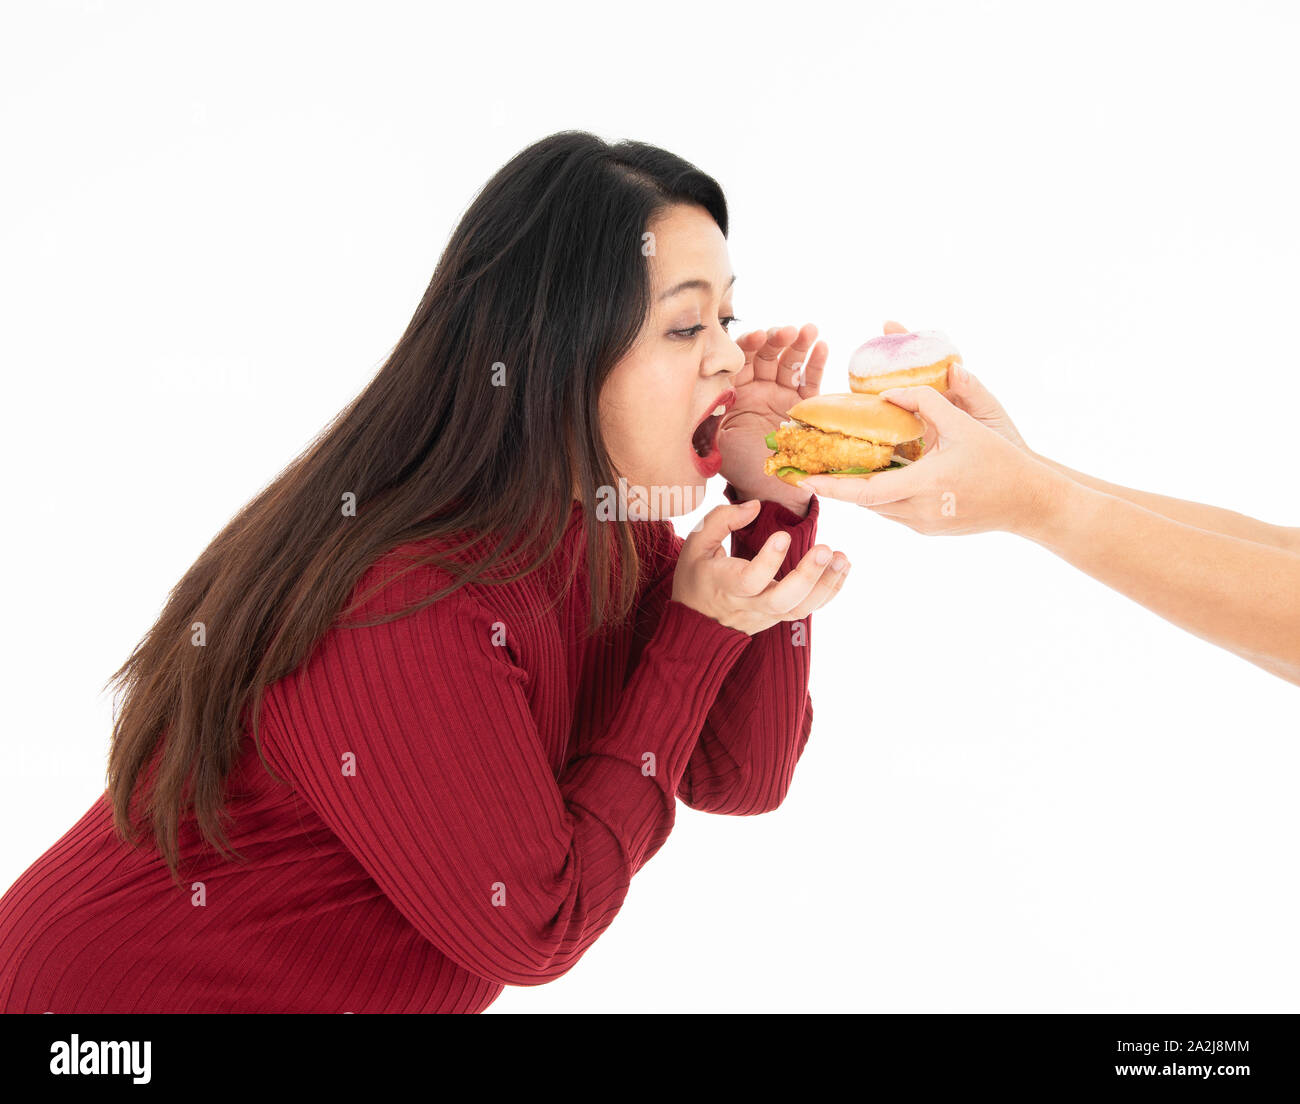 Una giovane donna grassa vestita di colore rosso era di mangiare un hamburger e ciambella che è stato consegnato. Ella è affamato e è il suo cibo preferito. Un sano concetto. Foto Stock